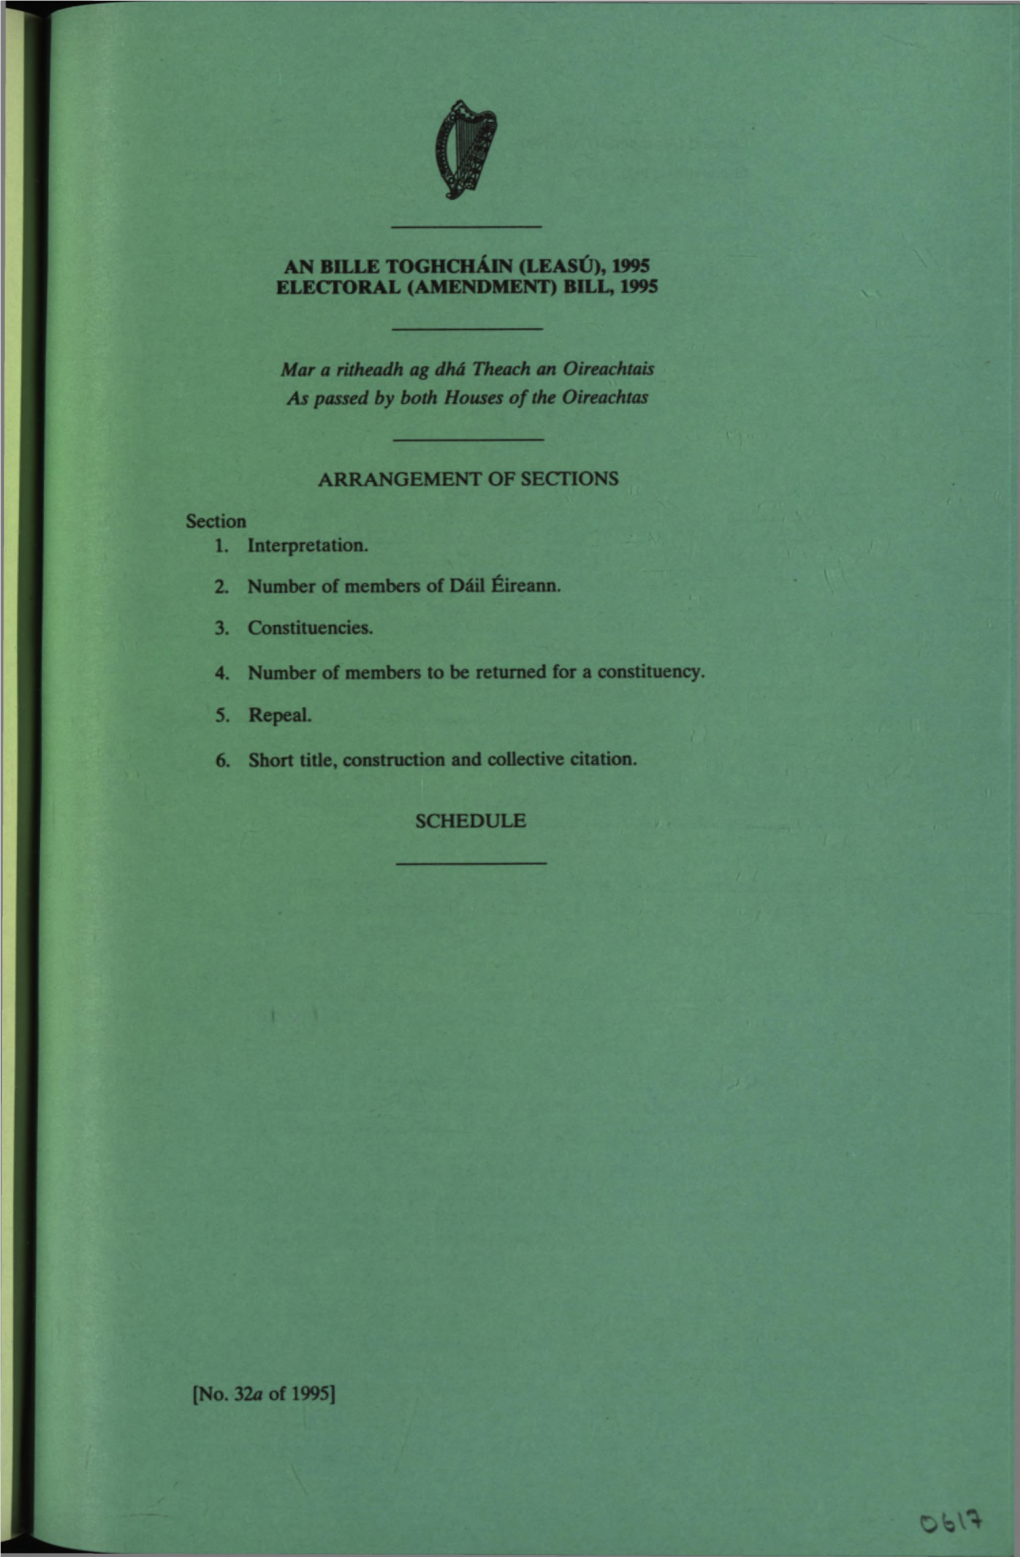 Electoral (Amendment) Bill, 1995